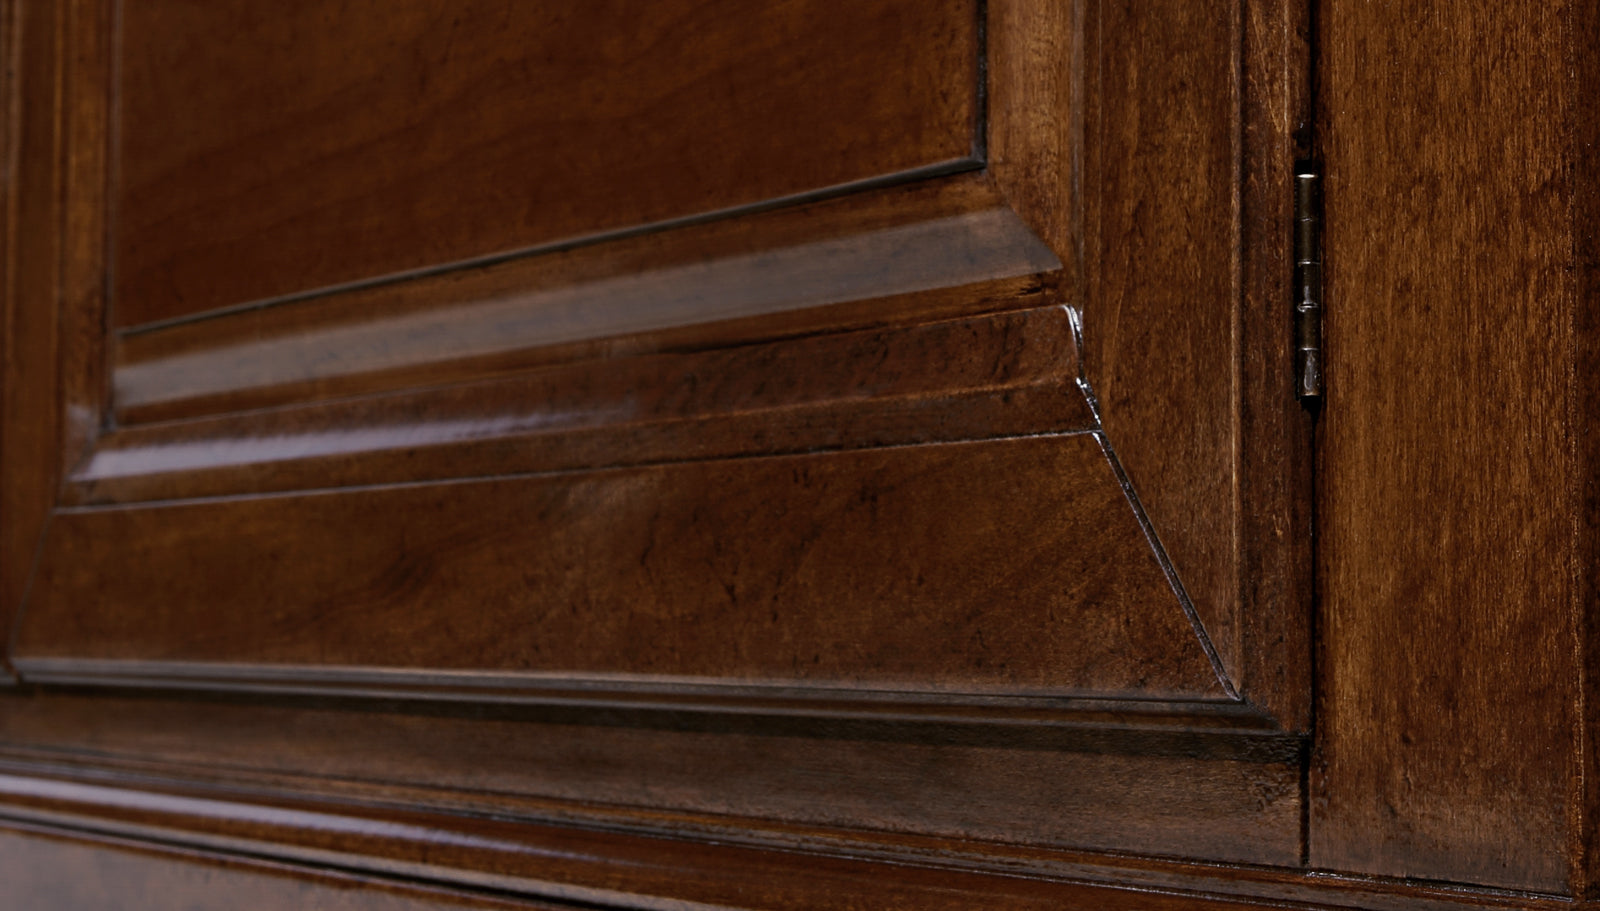 Dettaglio della lavorazione dell'anta per la Credenza madia contenitore classica in legno di ciliegio anta con bugna collezione Arte Piombini Mobili Classici Italiani 8812B